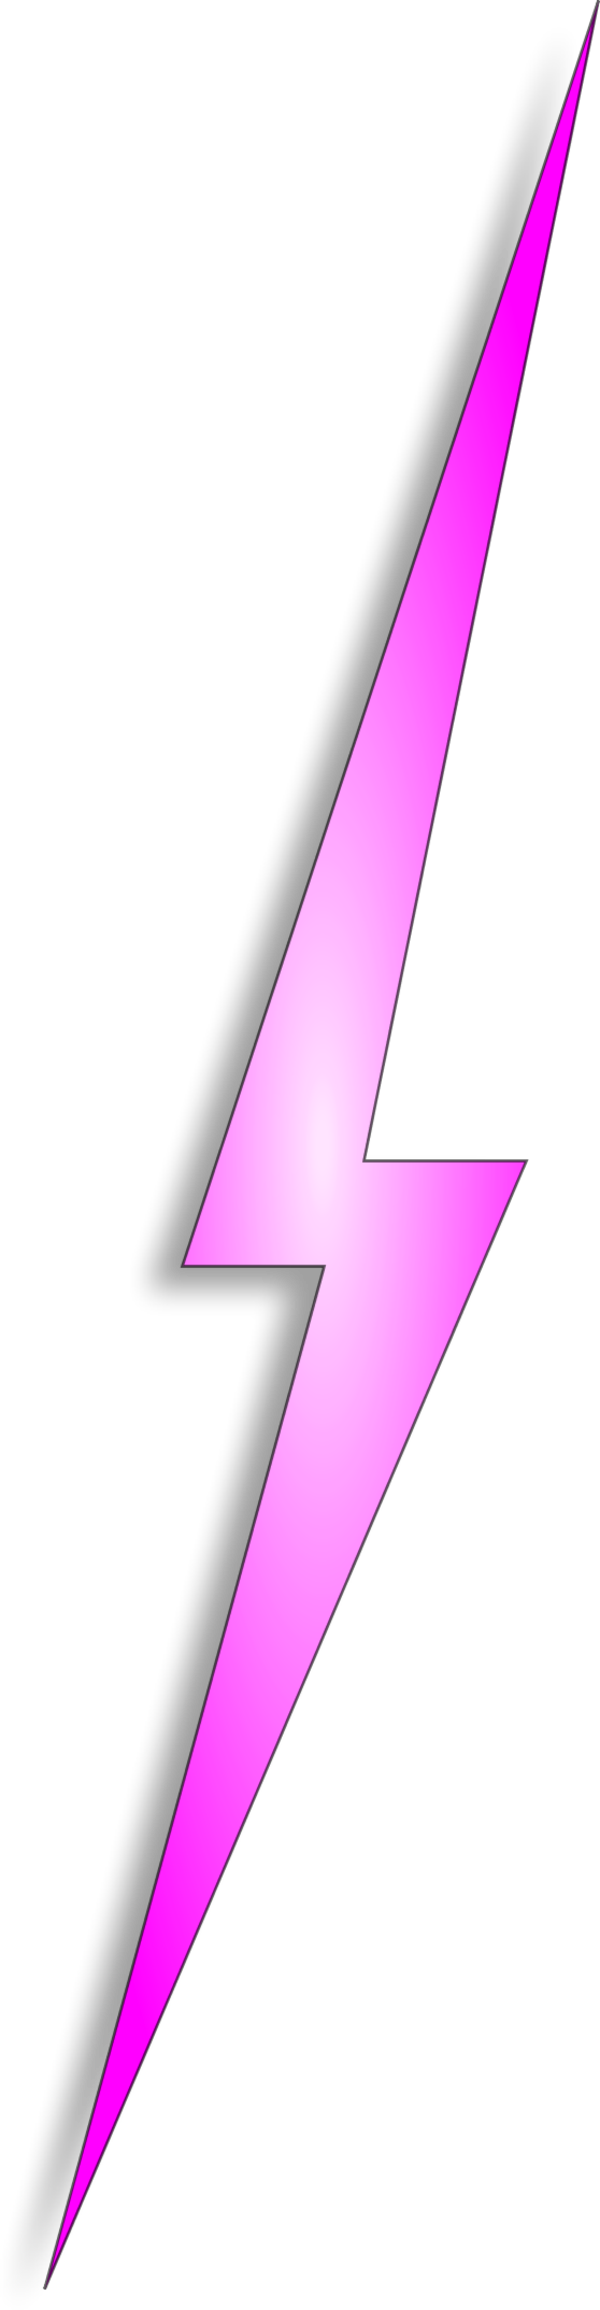 lightning stike of pink